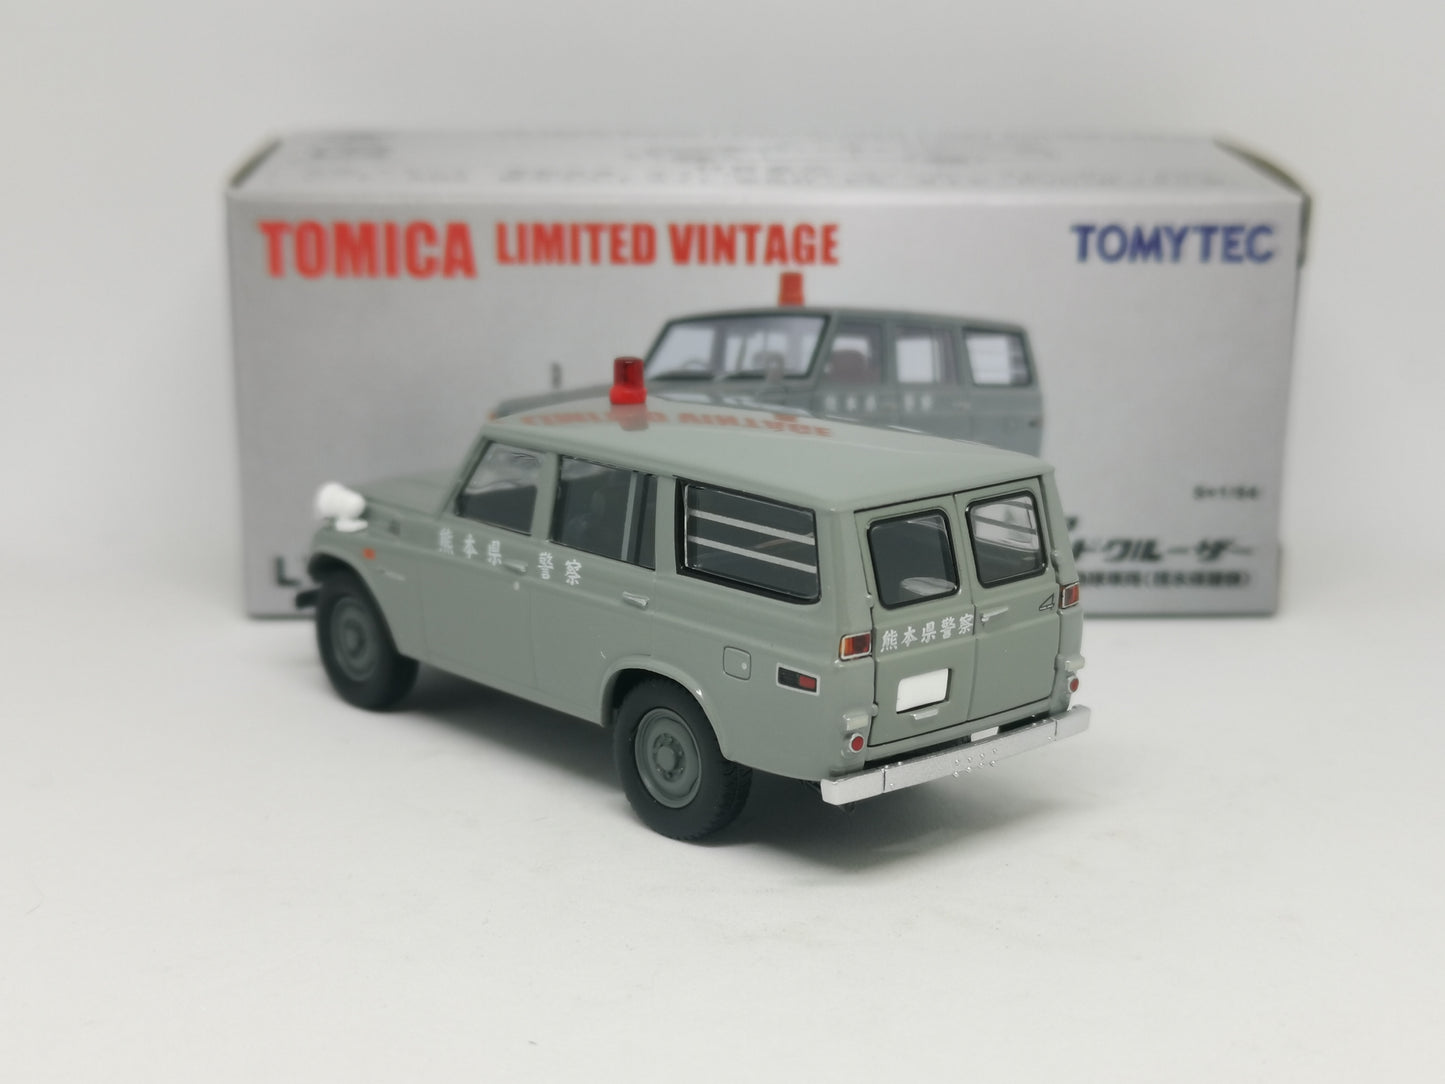 Tomica Limited Vintage LV-193a Toyota Land Cruiser FJ56V Japan Kumamoto Police